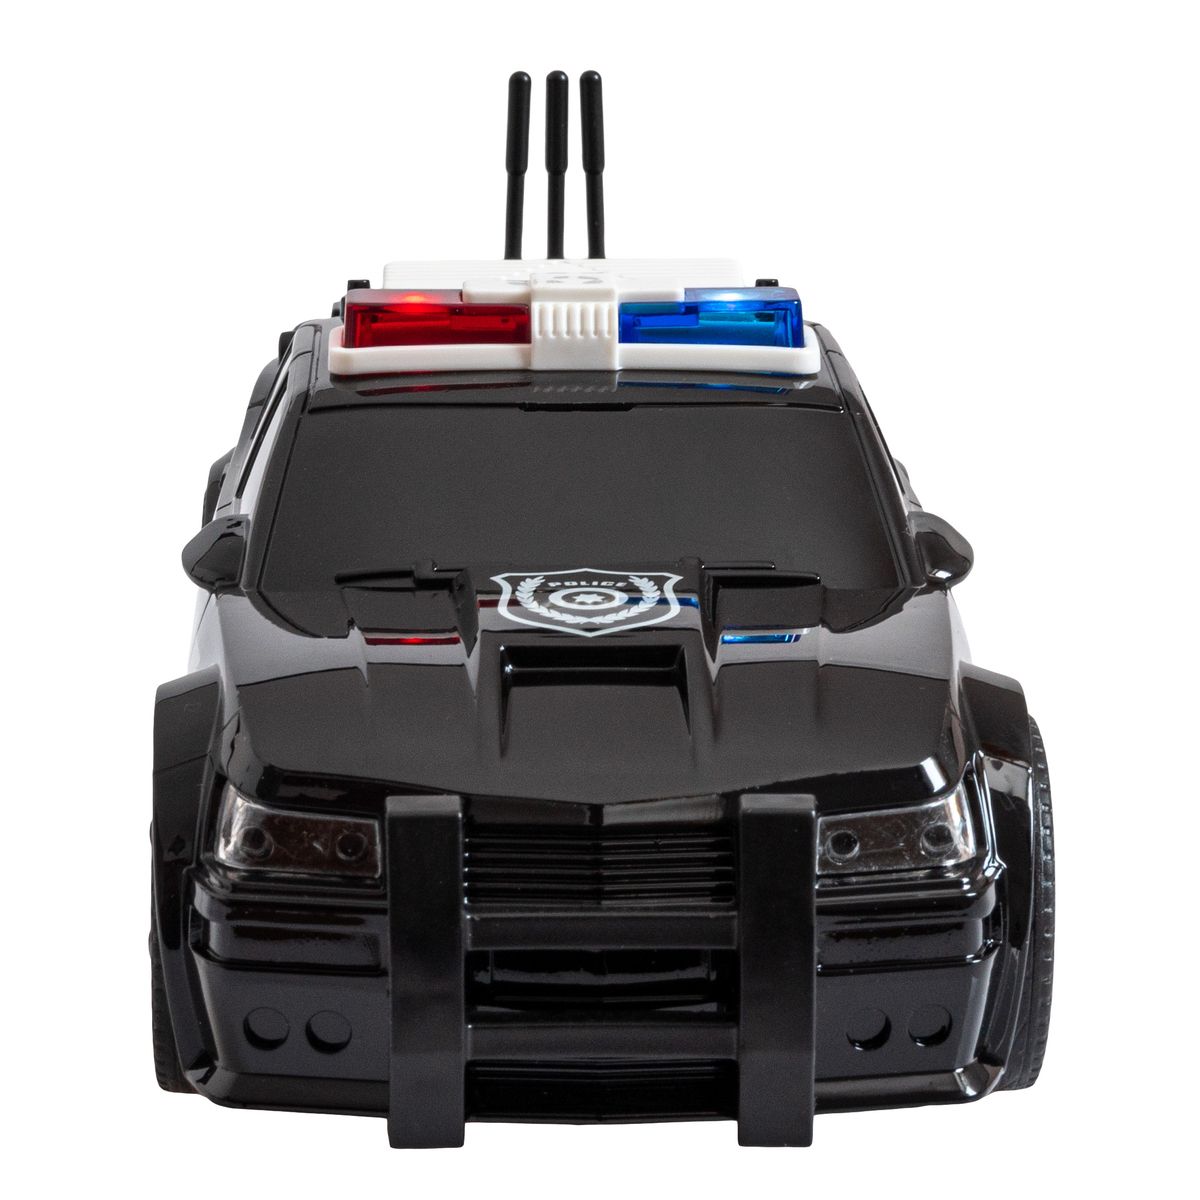 Samochód  policyjny światło i dźwięk Anek (SP83986)